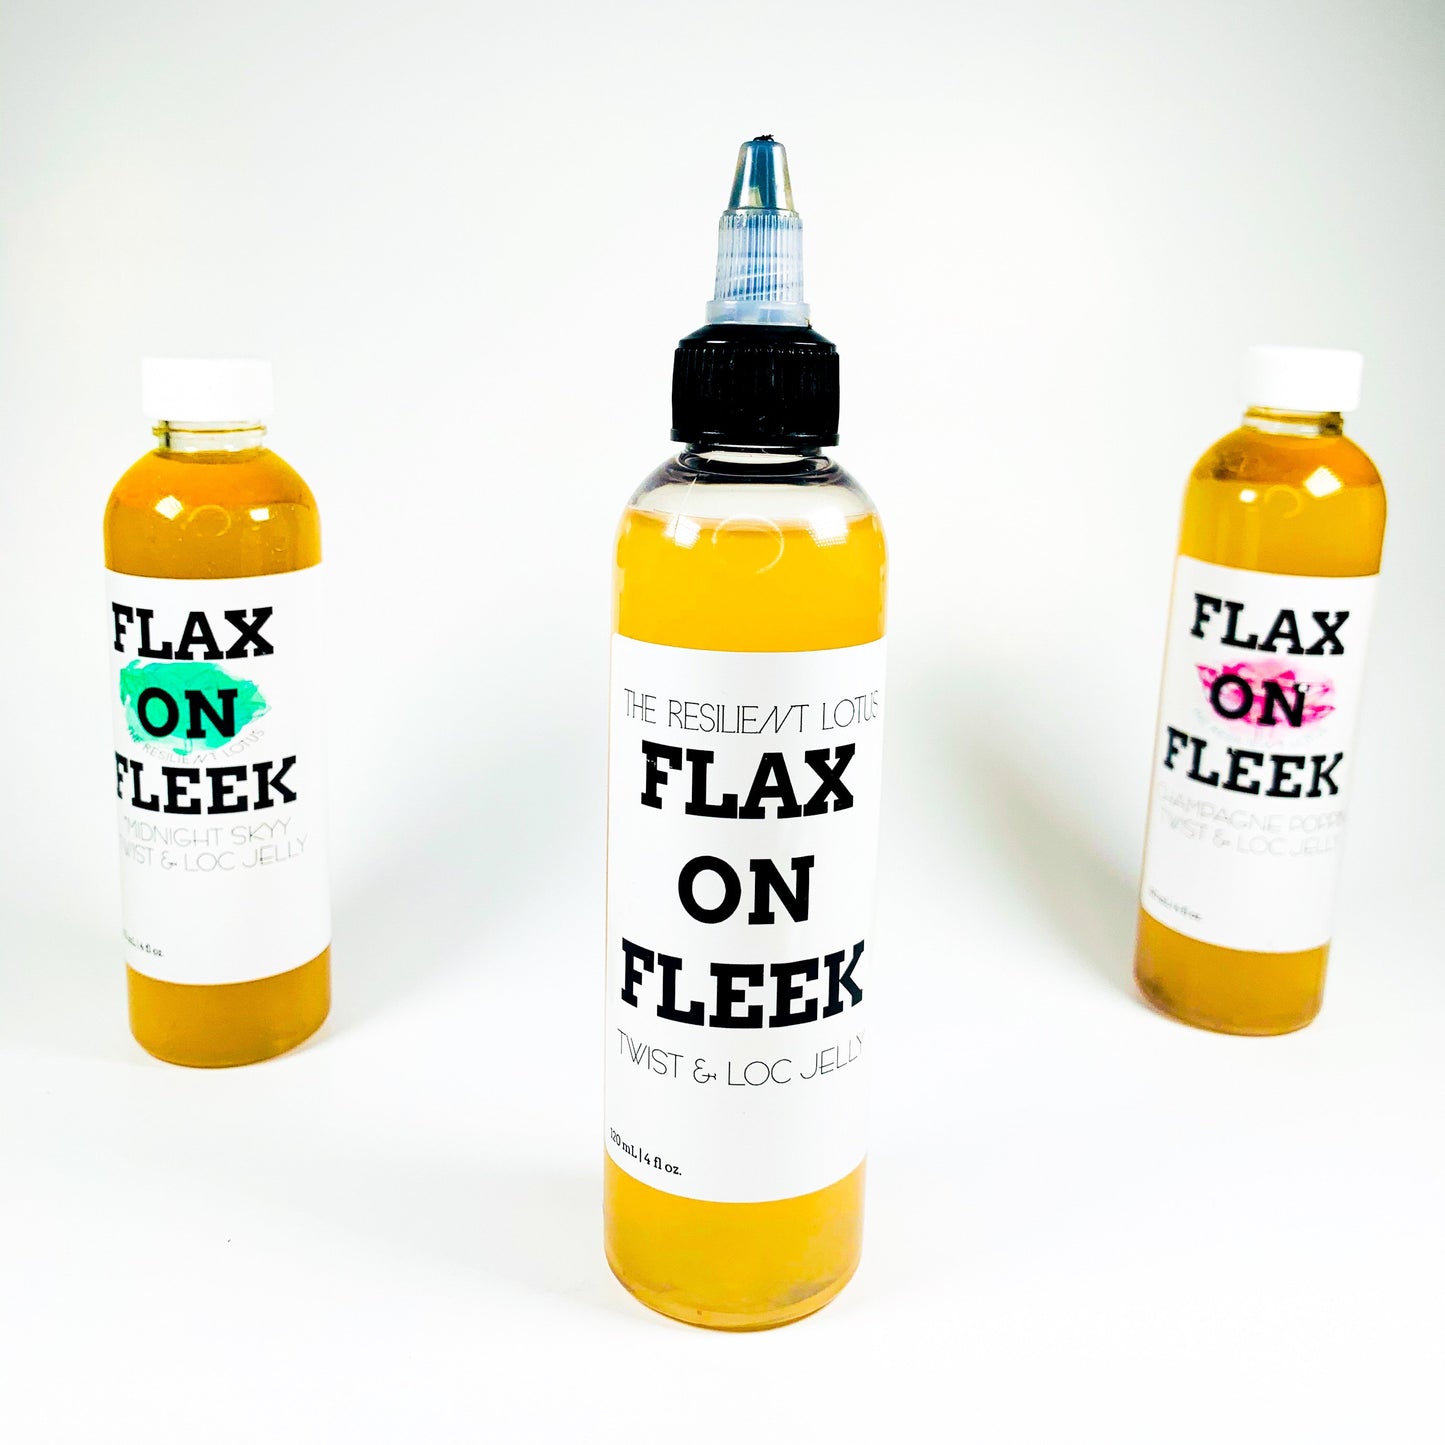 All Natural Flax on Fleek [Re]Twist + Curl Jelly